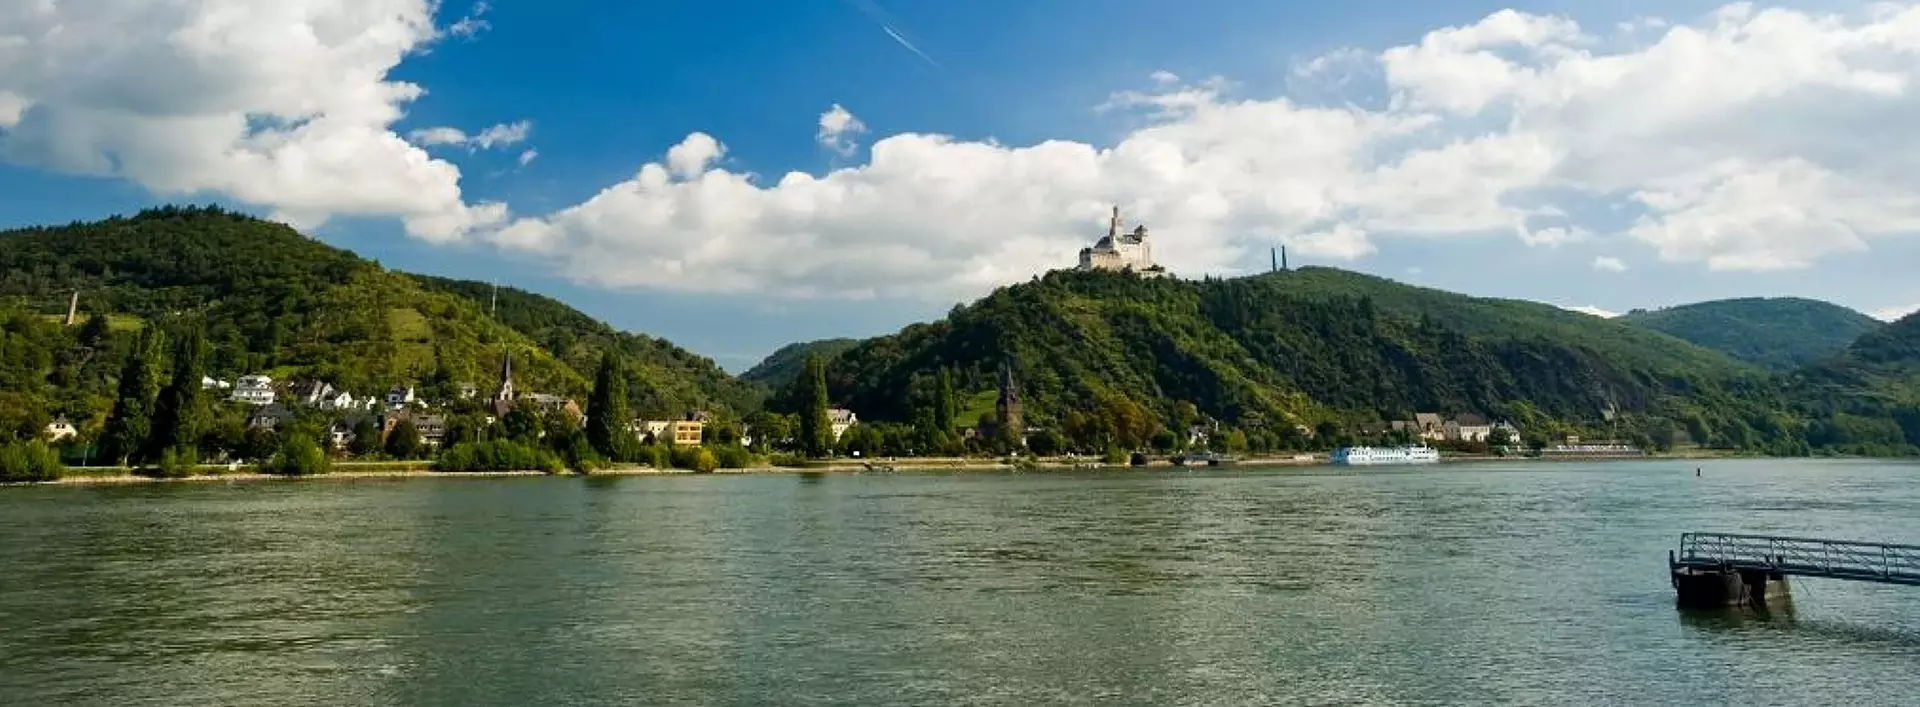 im Urlaub am Mittelrhein die Marksburg bestaunen, die einzige unzerstörte Höhenburg in der UNESCO-Welterbe Kulturlandschaft Oberes Mittelrheintal.